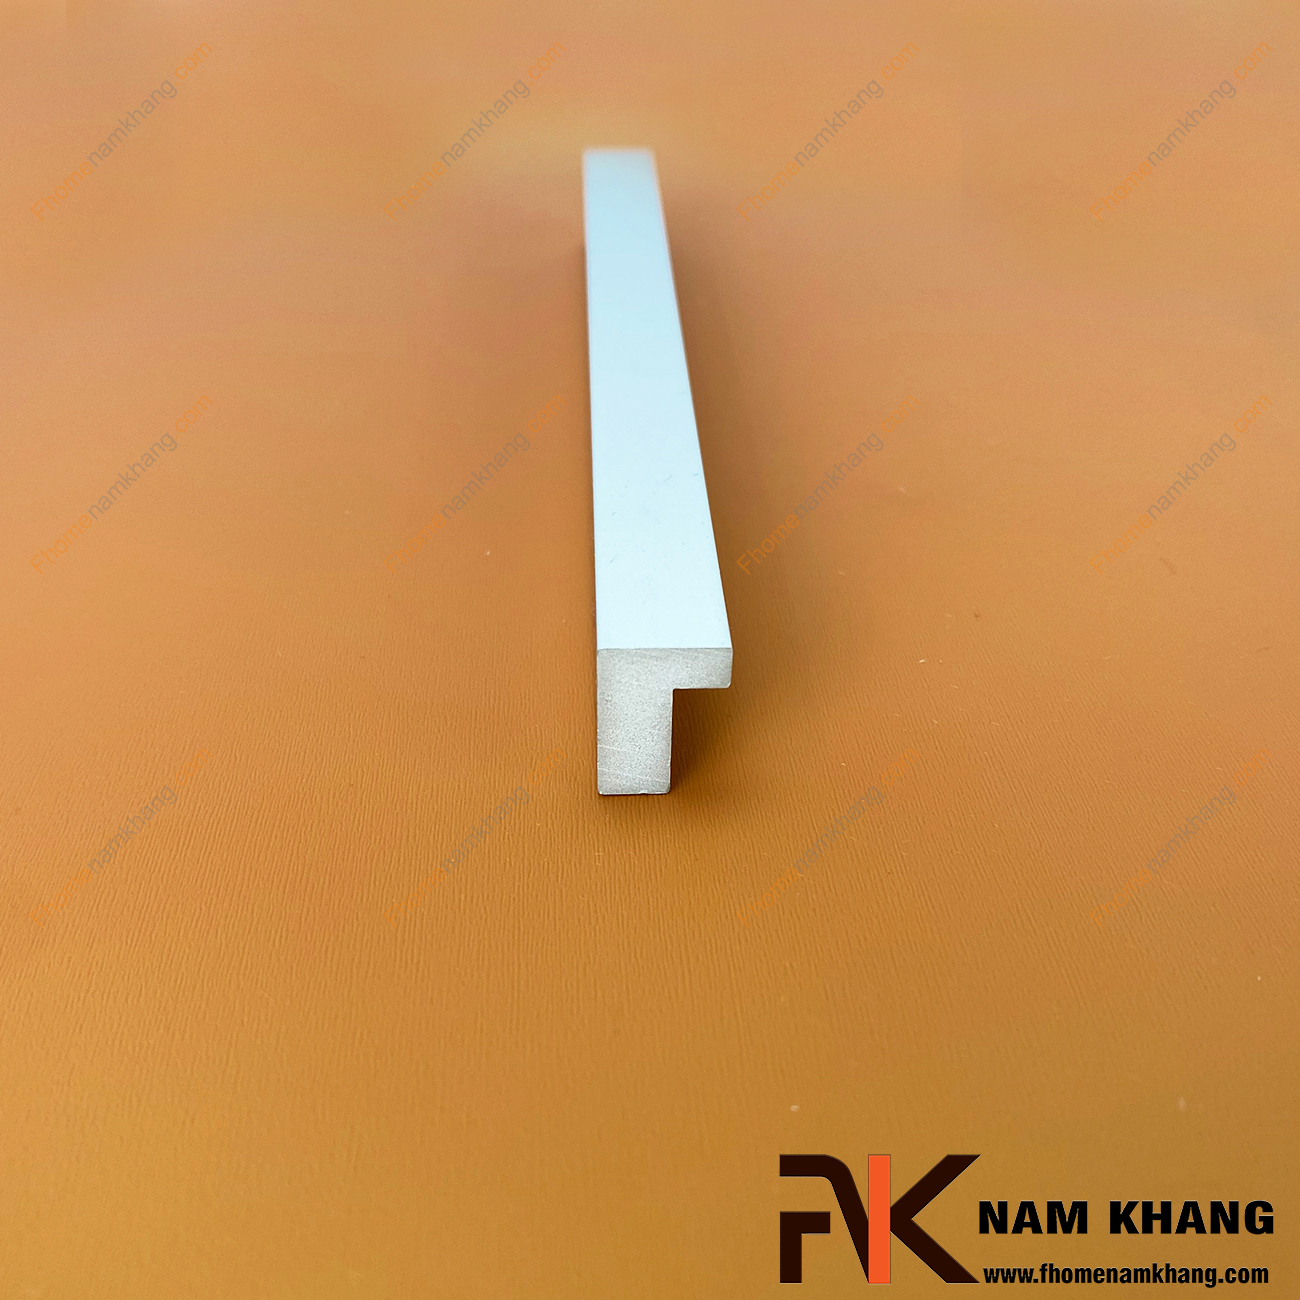 Tay kéo cửa tủ dạng thanh chữ L màu nhôm mờ NK014-N có dạng thanh chữ L với góc cạnh vuông được xử lý gọn gàng. Sỡ hữu công nghệ anode nhôm tạo màu cực đẹp, NK014 mang đến sự thanh lịch và đẳng cấp cho một sản phẩm chất lượng.